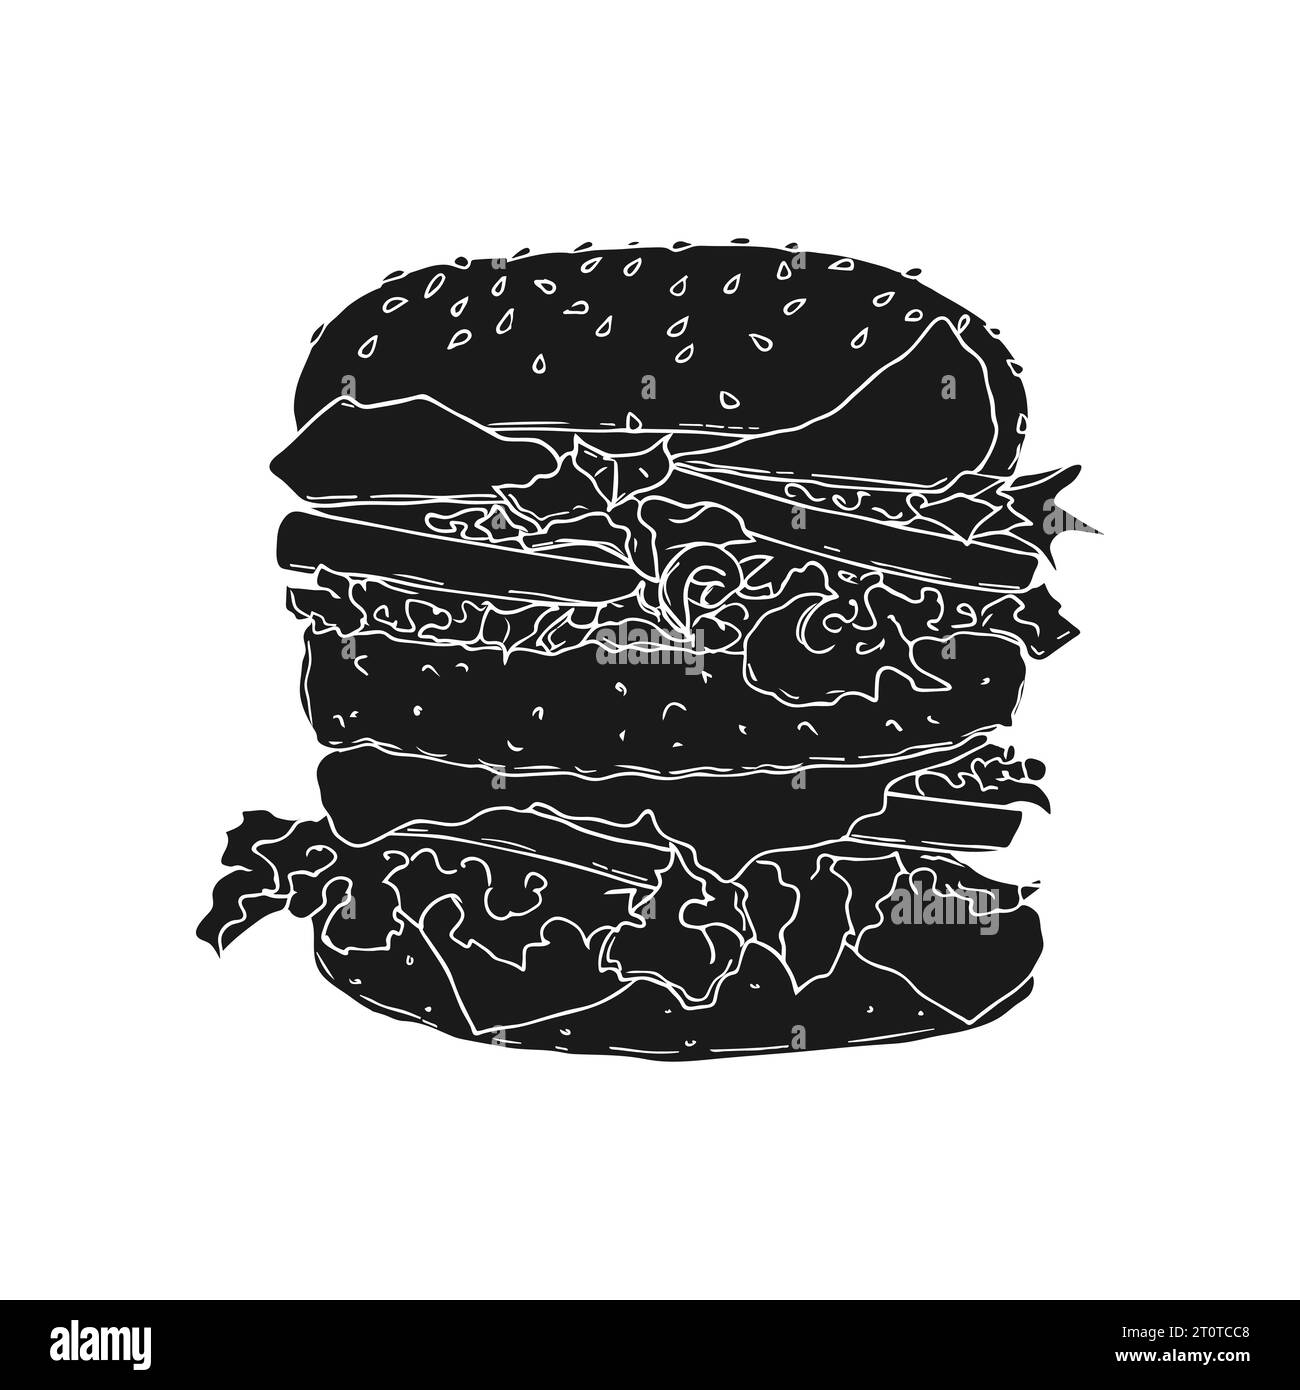 Croquis dessiné à la main de silhouette Burger isolé. Illustration vectorielle Illustration de Vecteur